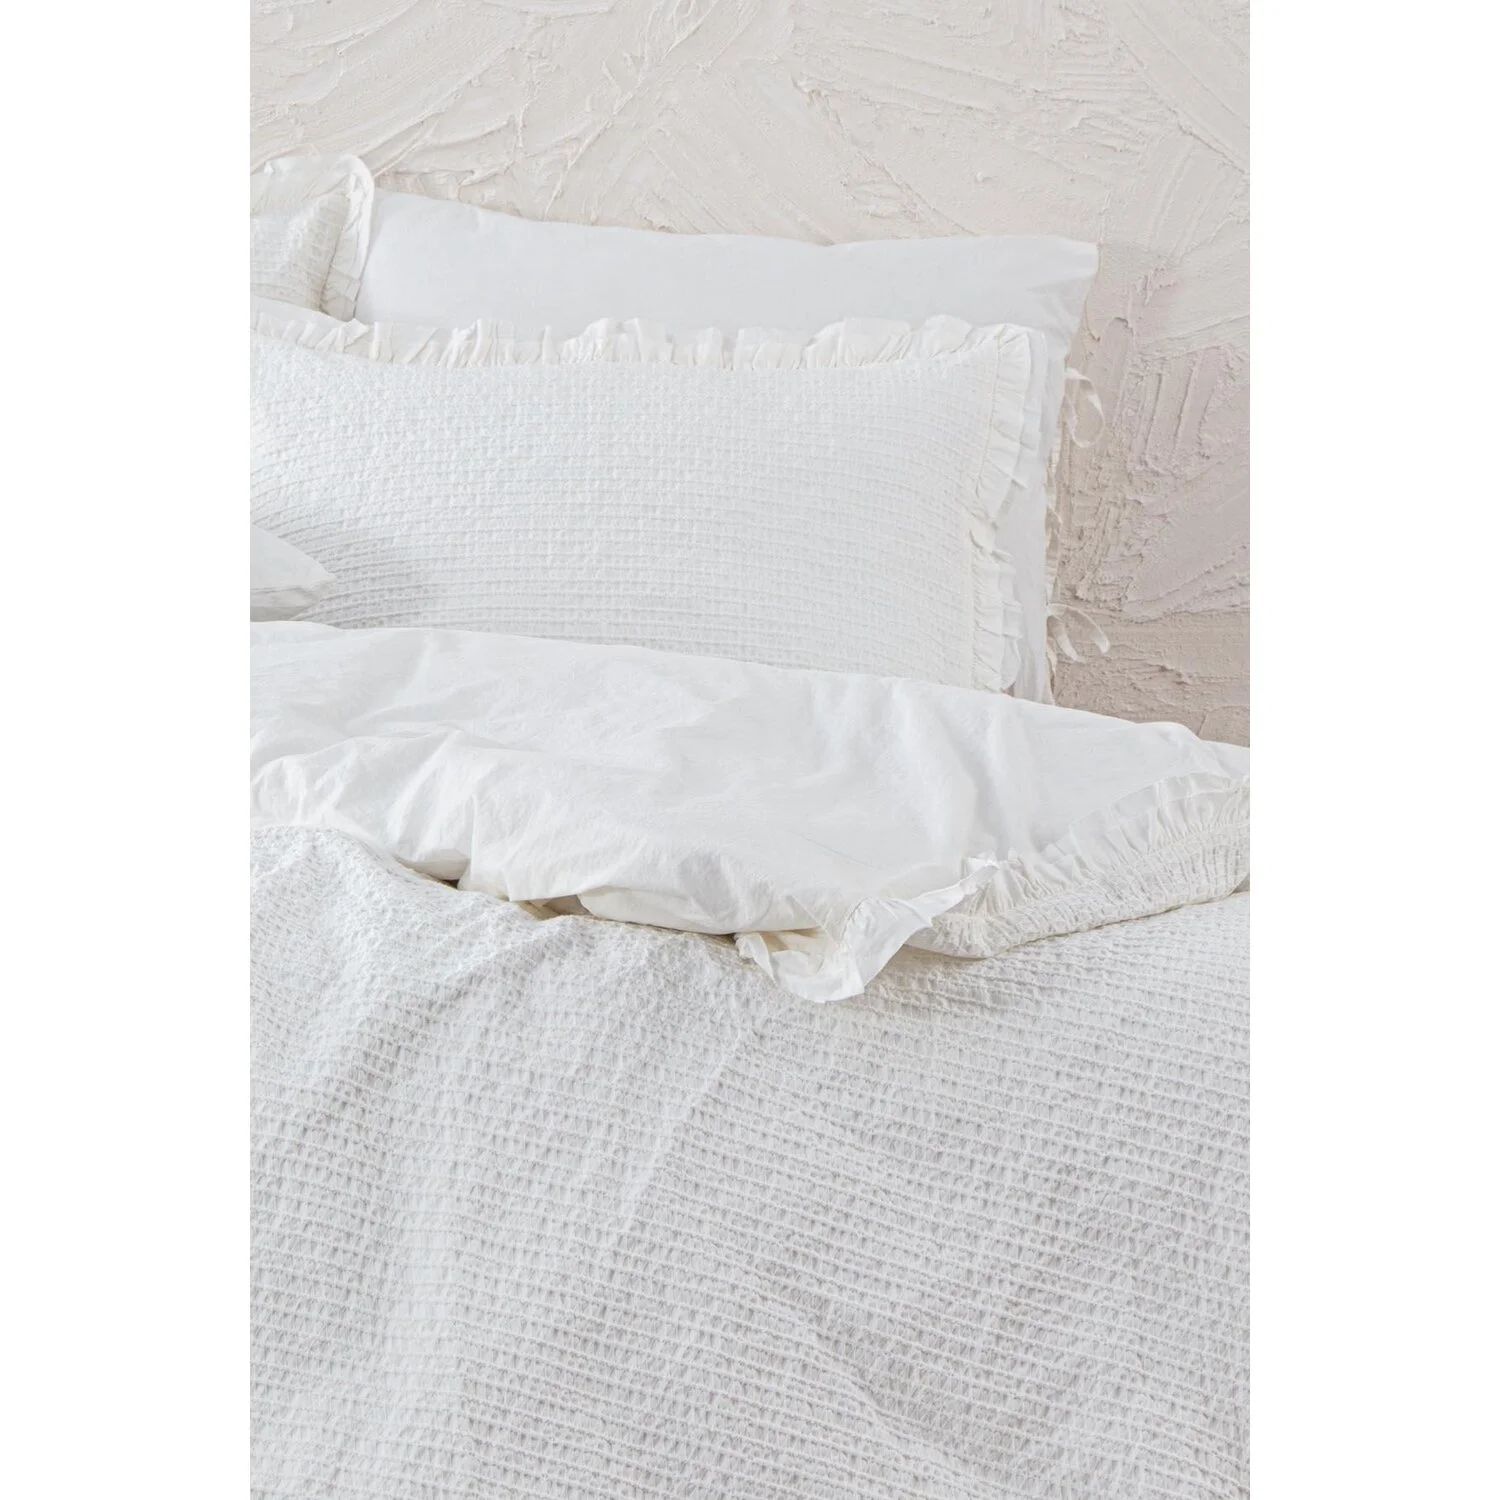 Комплект постельного белья Ecocotton Ayda из 100% органического хлопка кремового цвета 200X220 см